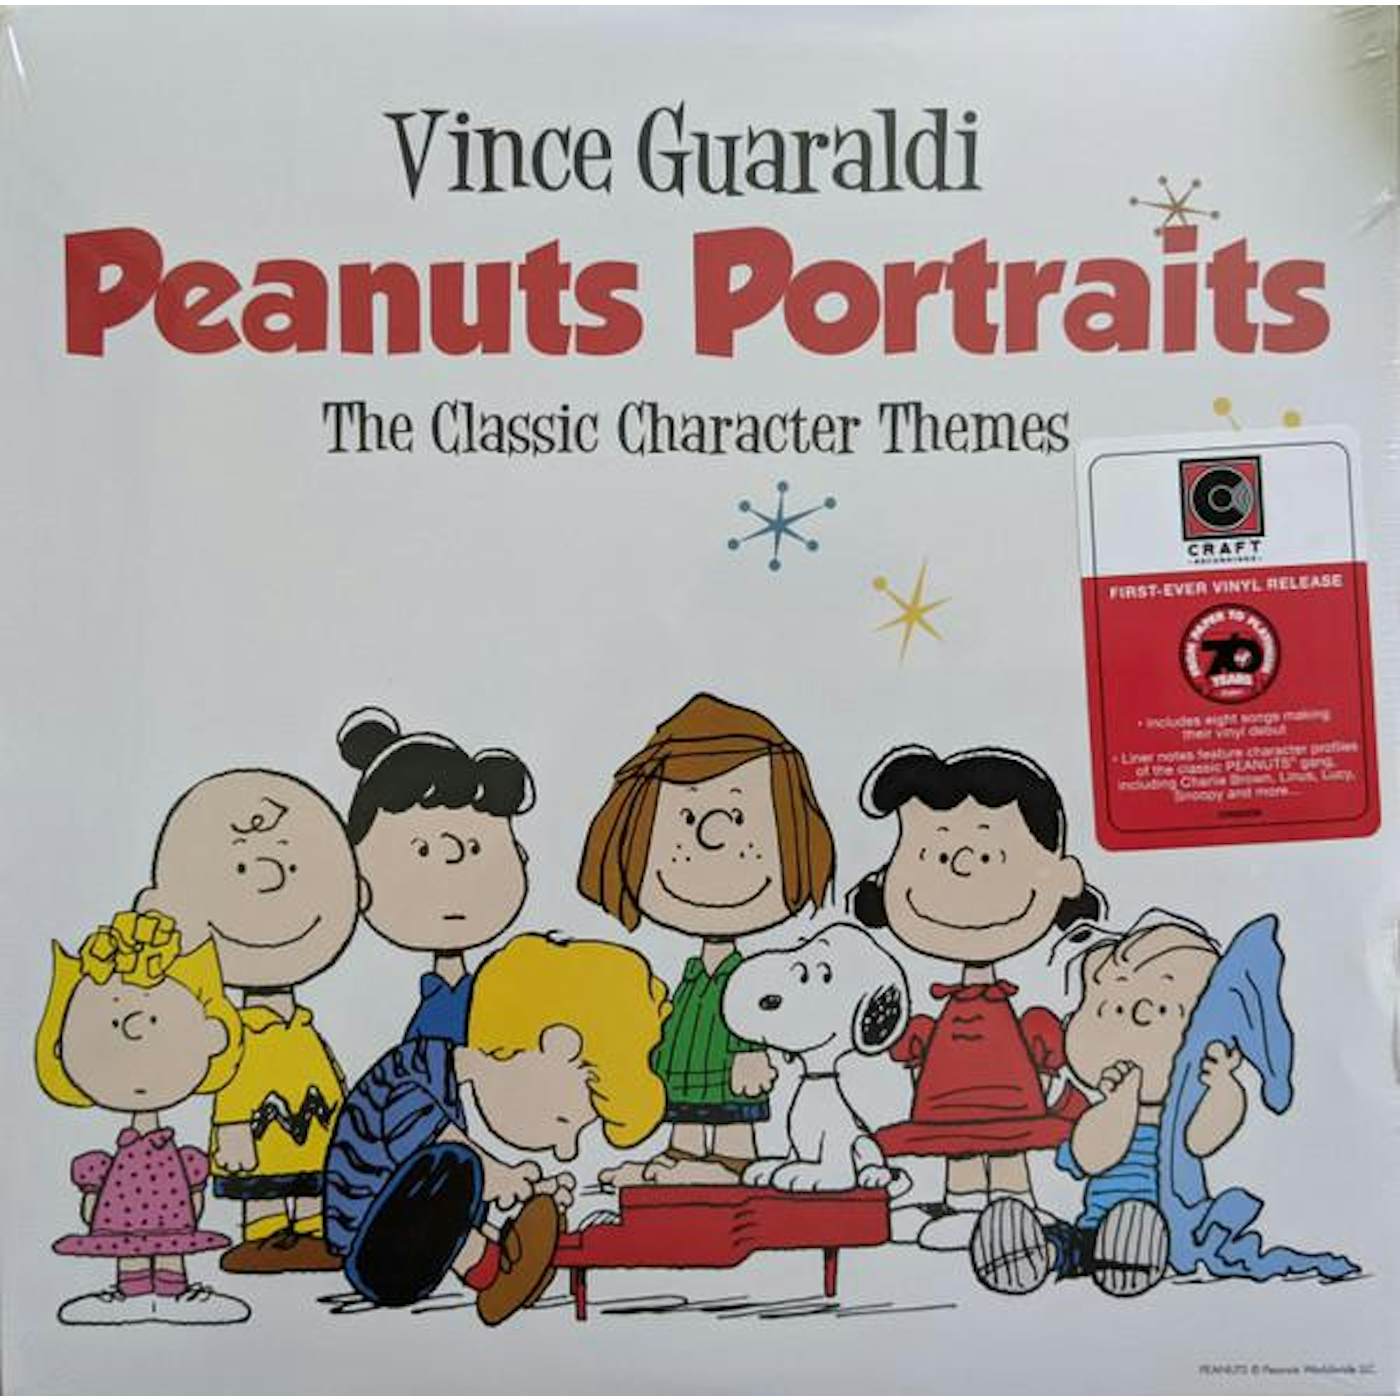 Vince Guaraldi Peanuts Portraits Vinyl Record